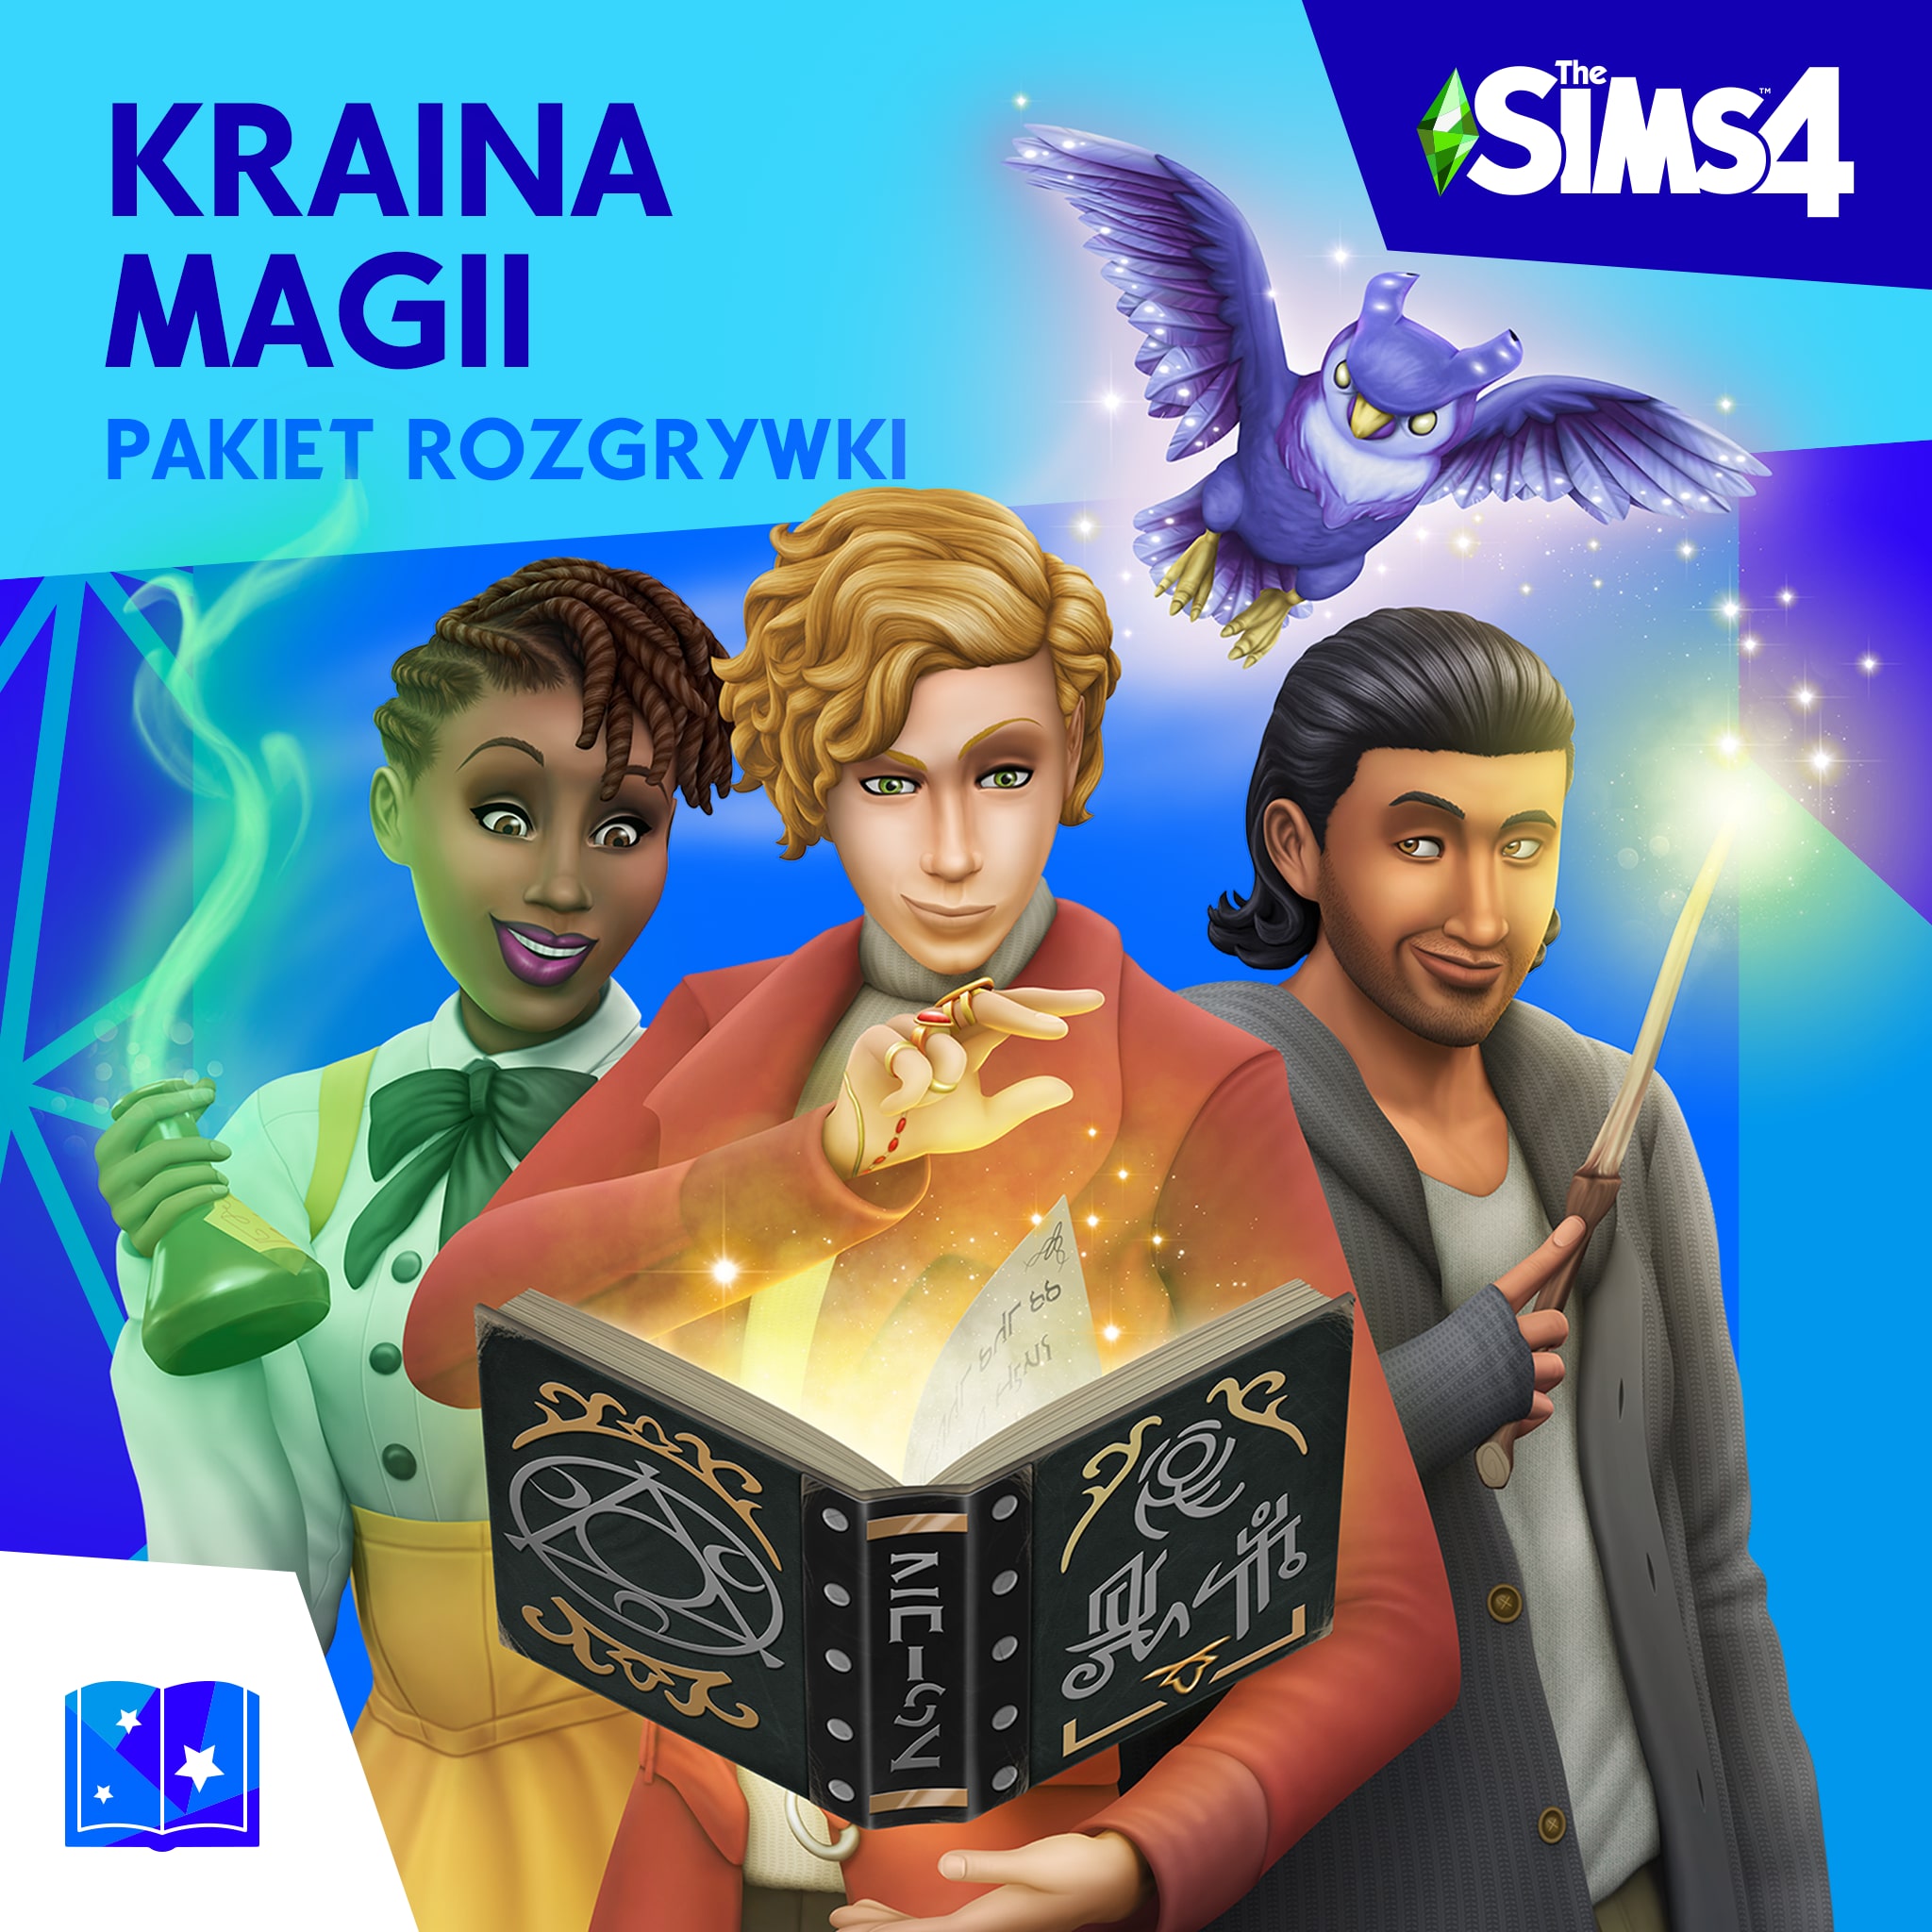 The Sims™ 4 Kraina magii